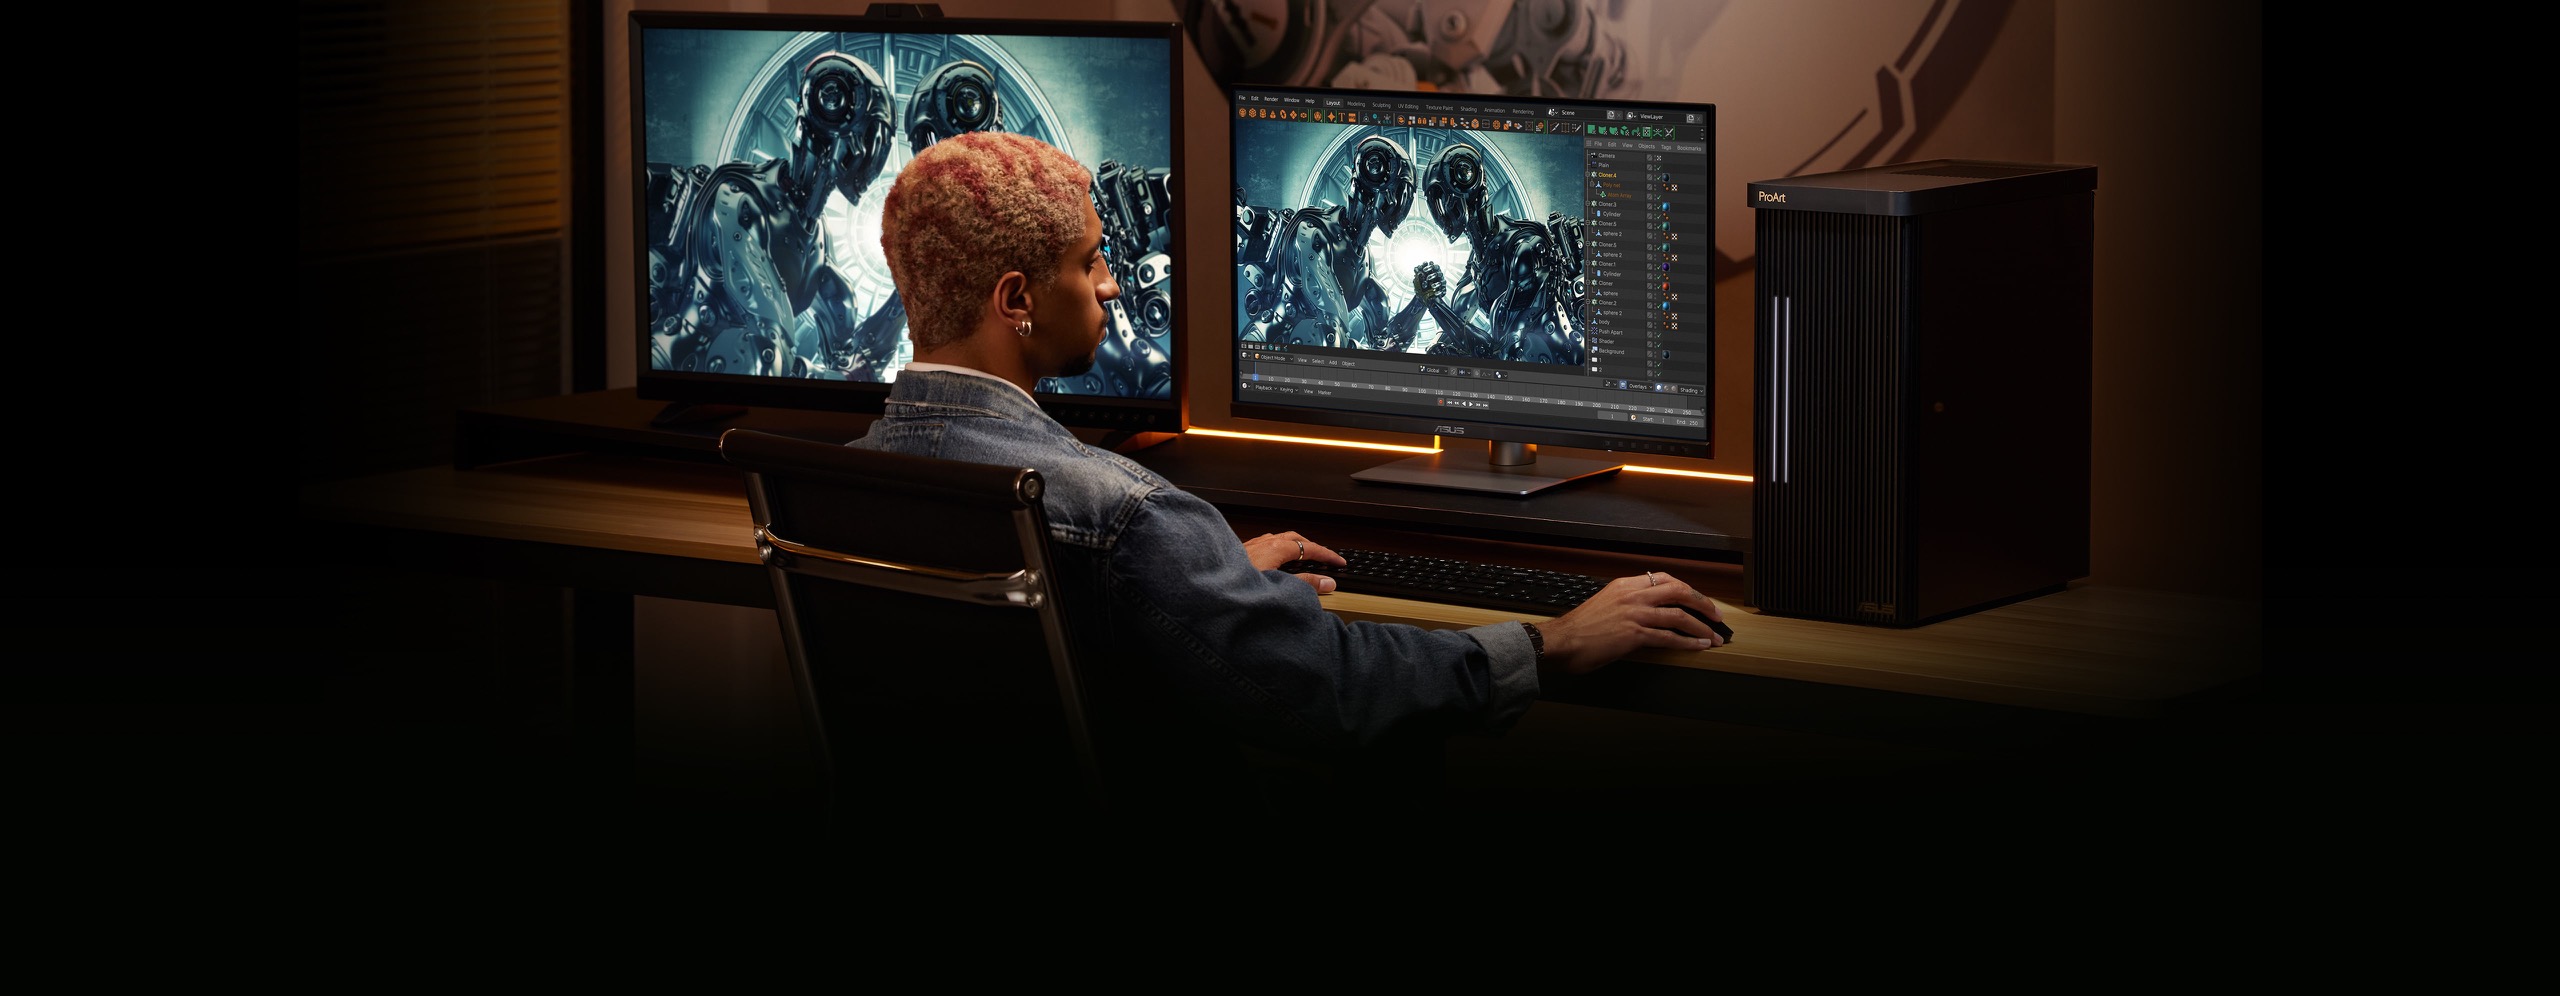 Egy ember székben ülve tartja az egeret, miközben gépel a billentyűzeten. A külső monitor a bal oldalon, a PC középen, a munkaállomás pedig jobb oldalt helyezkedik el. A hallban az íróasztallal szemközt egy kép lóg a falon.